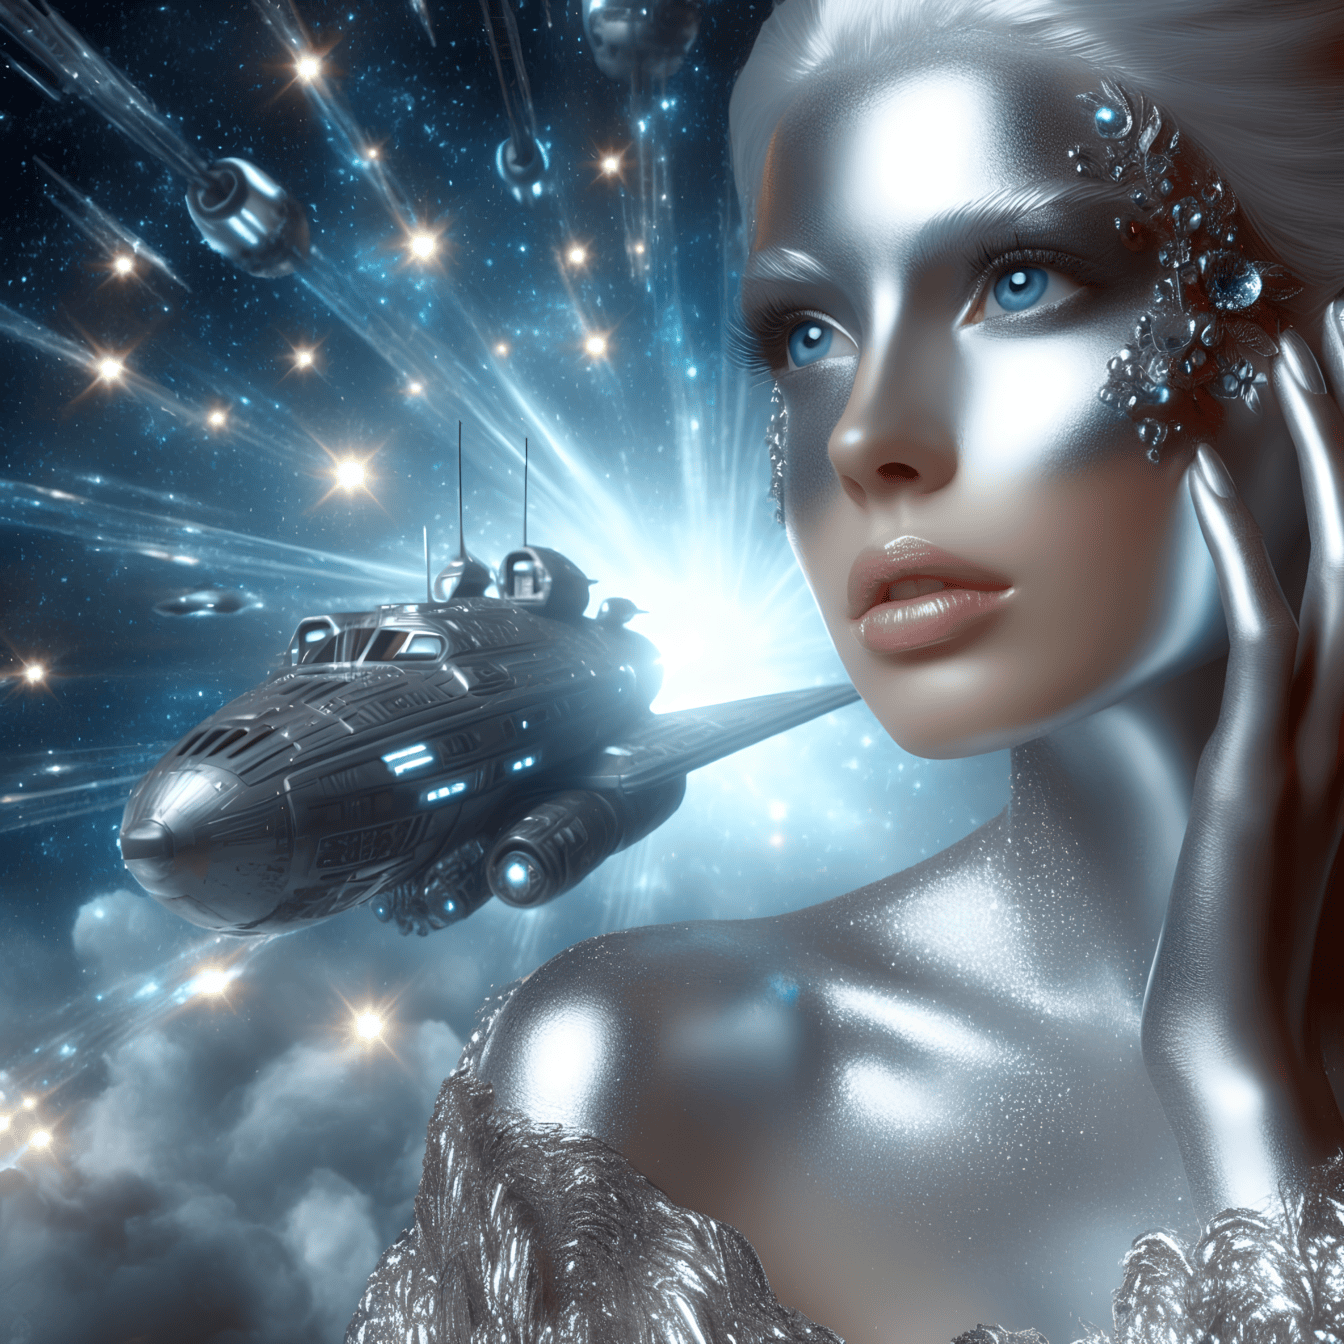 Um conceito de um ser superior extraterrestre humanoide-cibernético com maquiagem brilhante e cintilante e uma nave espacial ao fundo